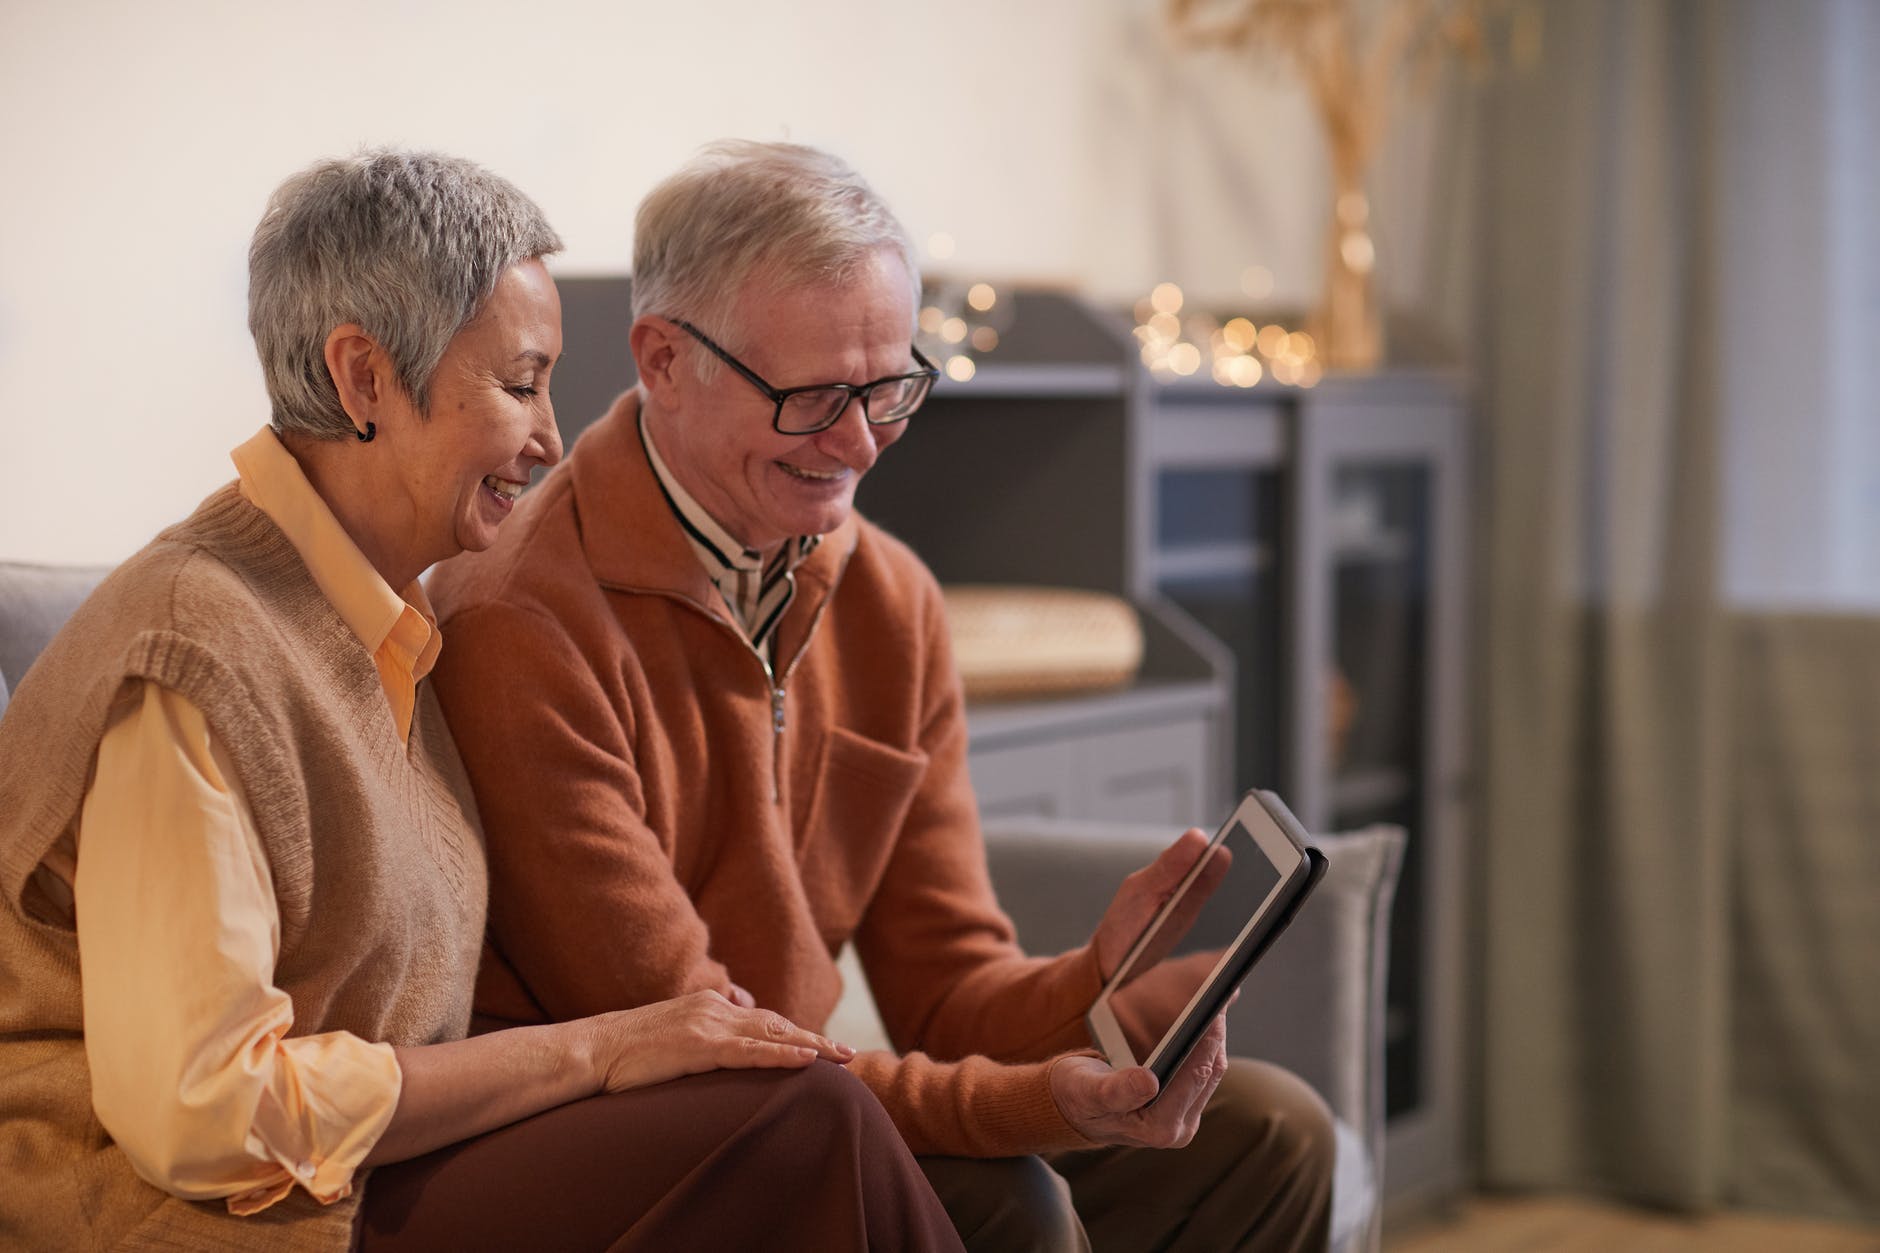 En la imagen aparecen dos personas, mayores de 60 años, sonriendo y mirando con atención una tablet